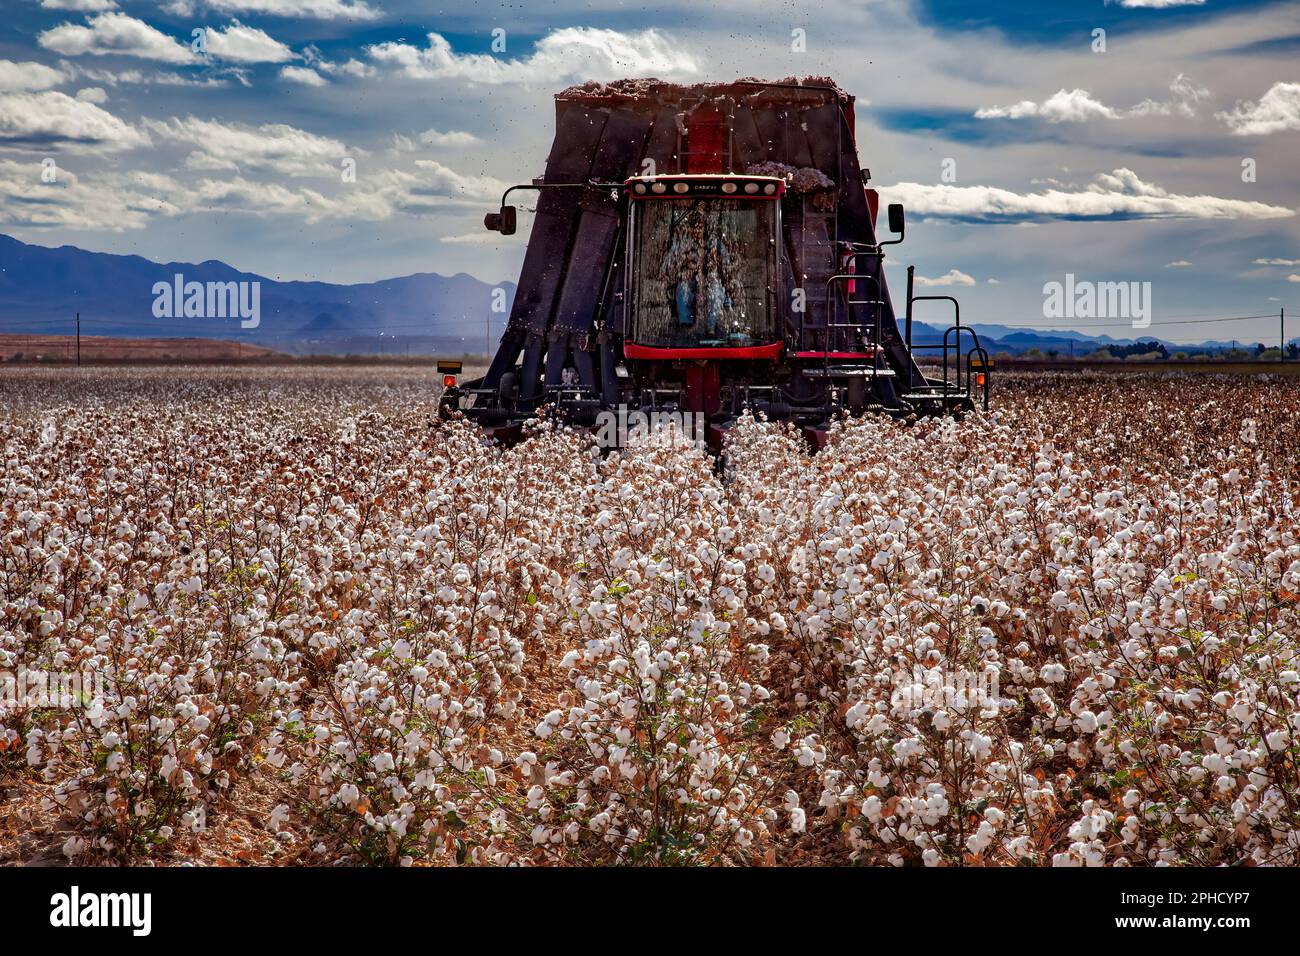 À l'approche de la récolteuse - coton Pima prêt pour la récolte - Agriculture - Marana, Arizona Banque D'Images